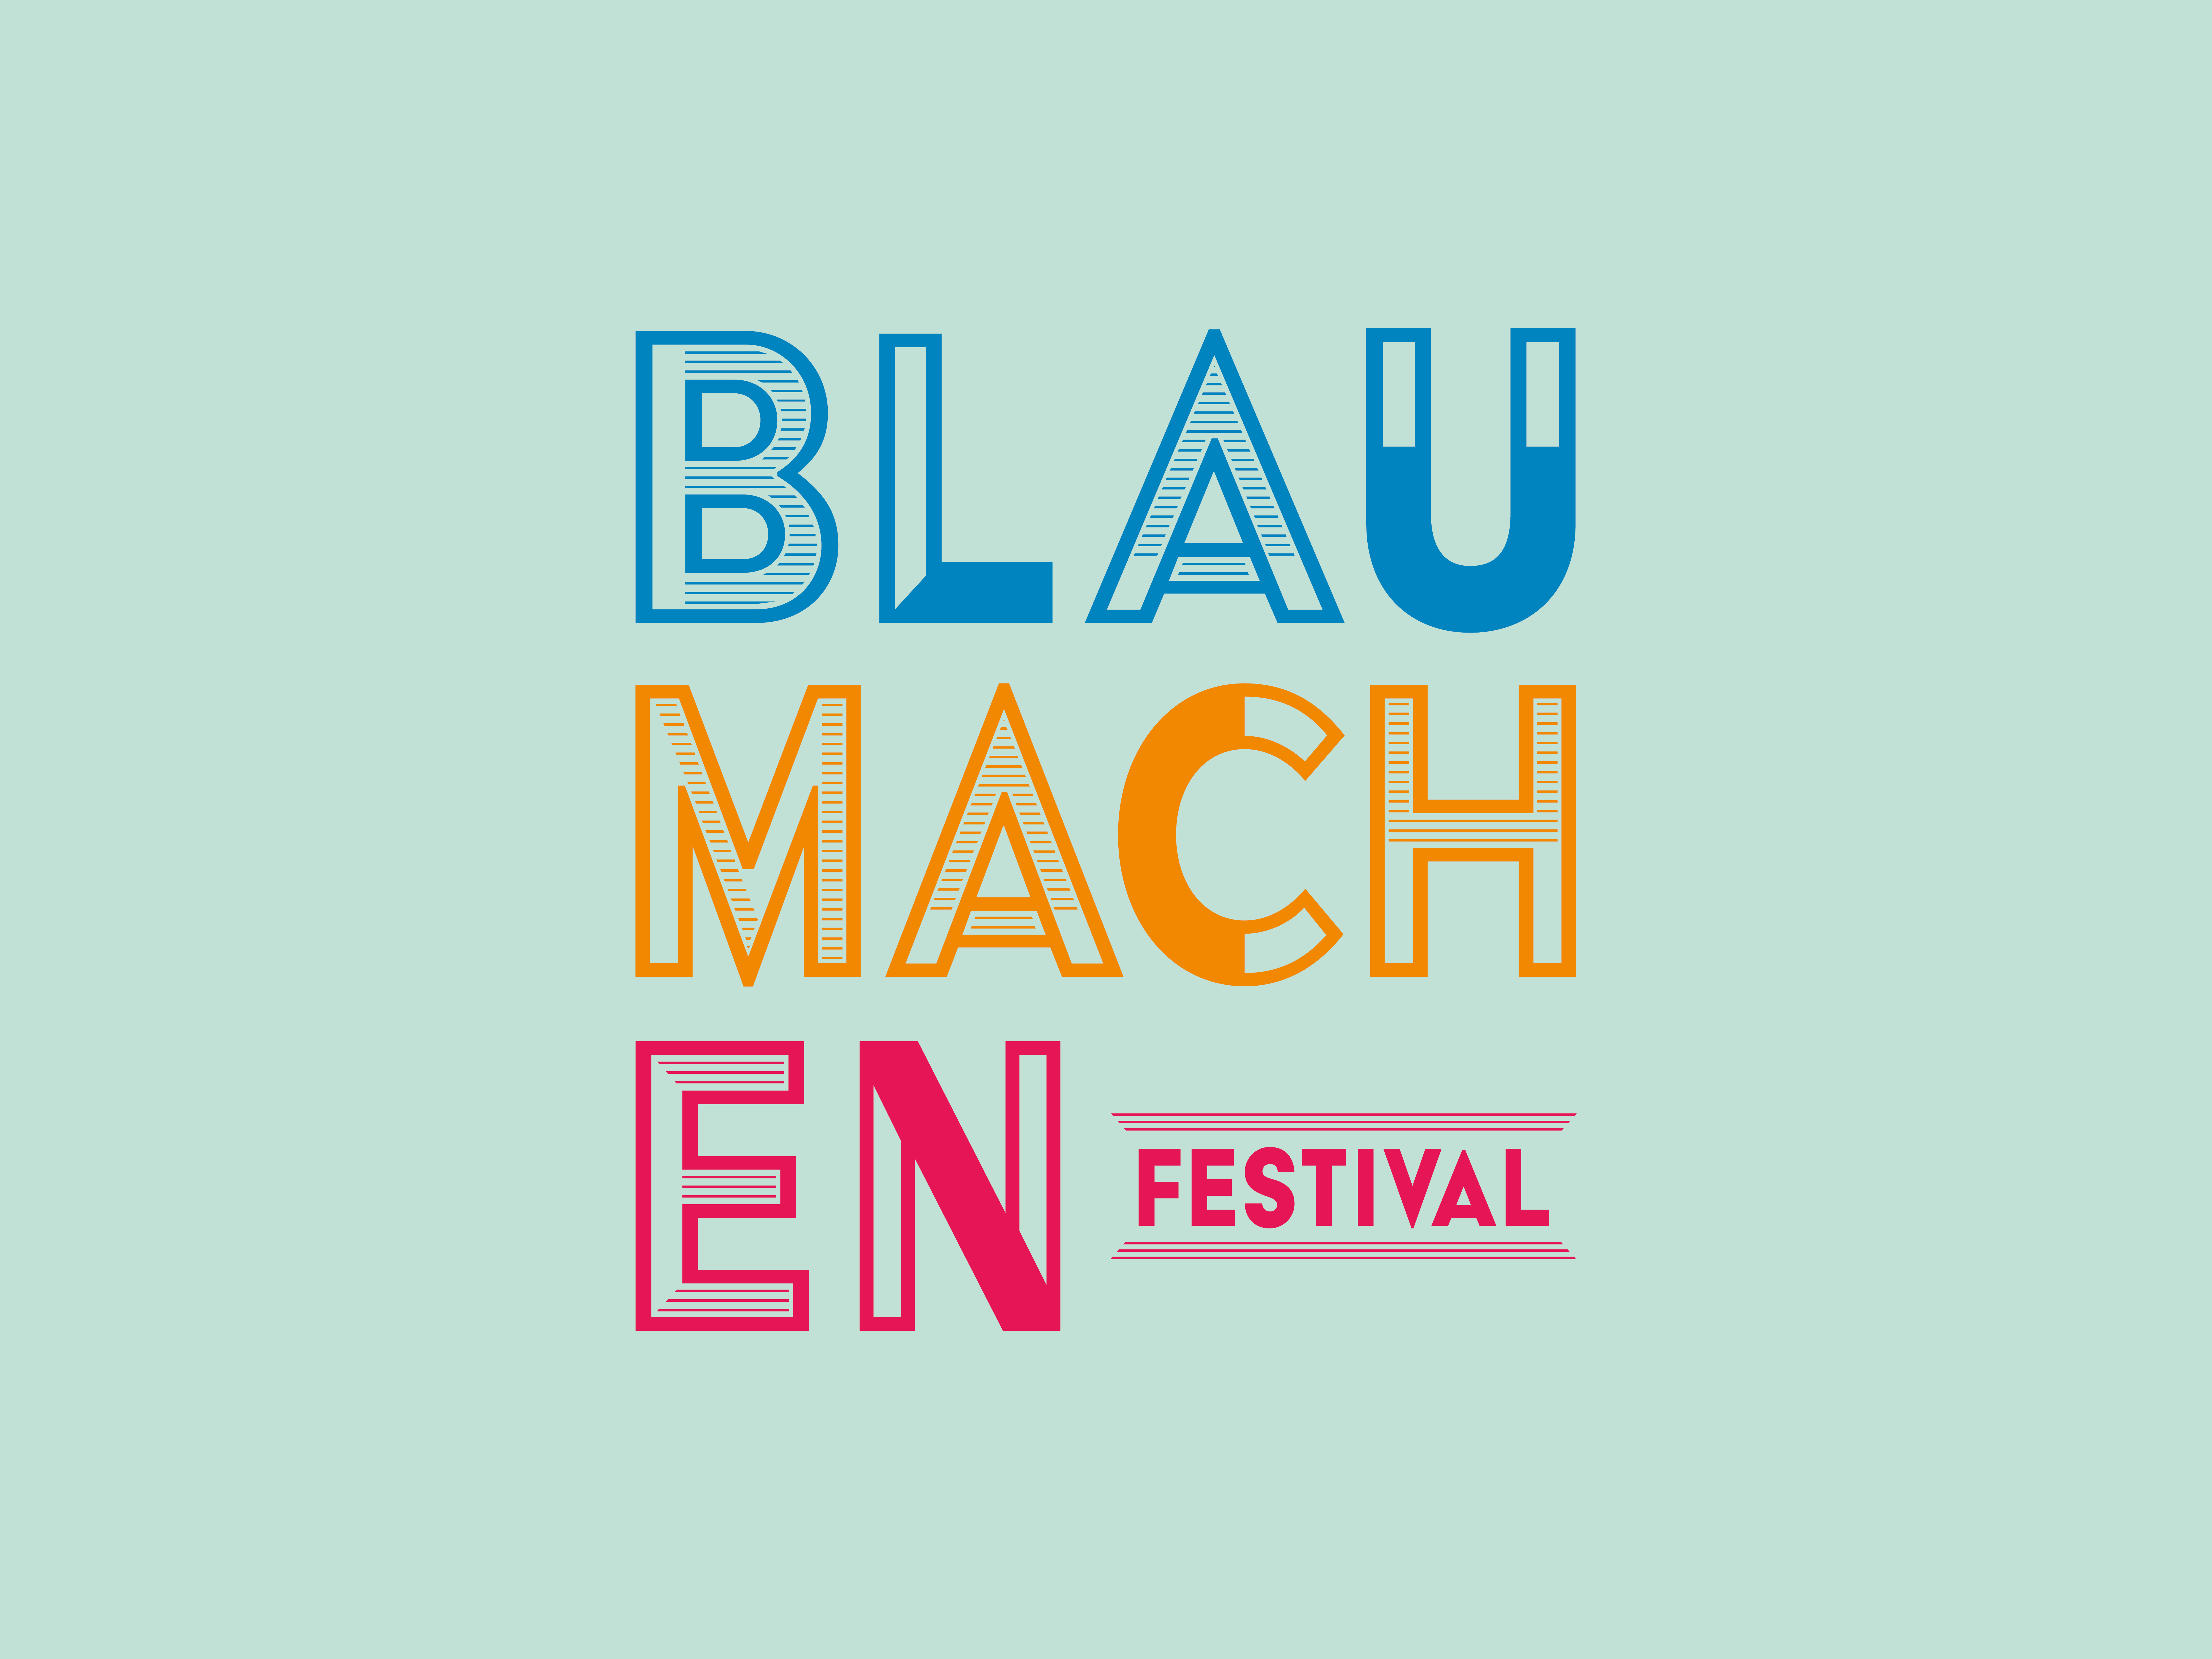 Blauchmachen Festival